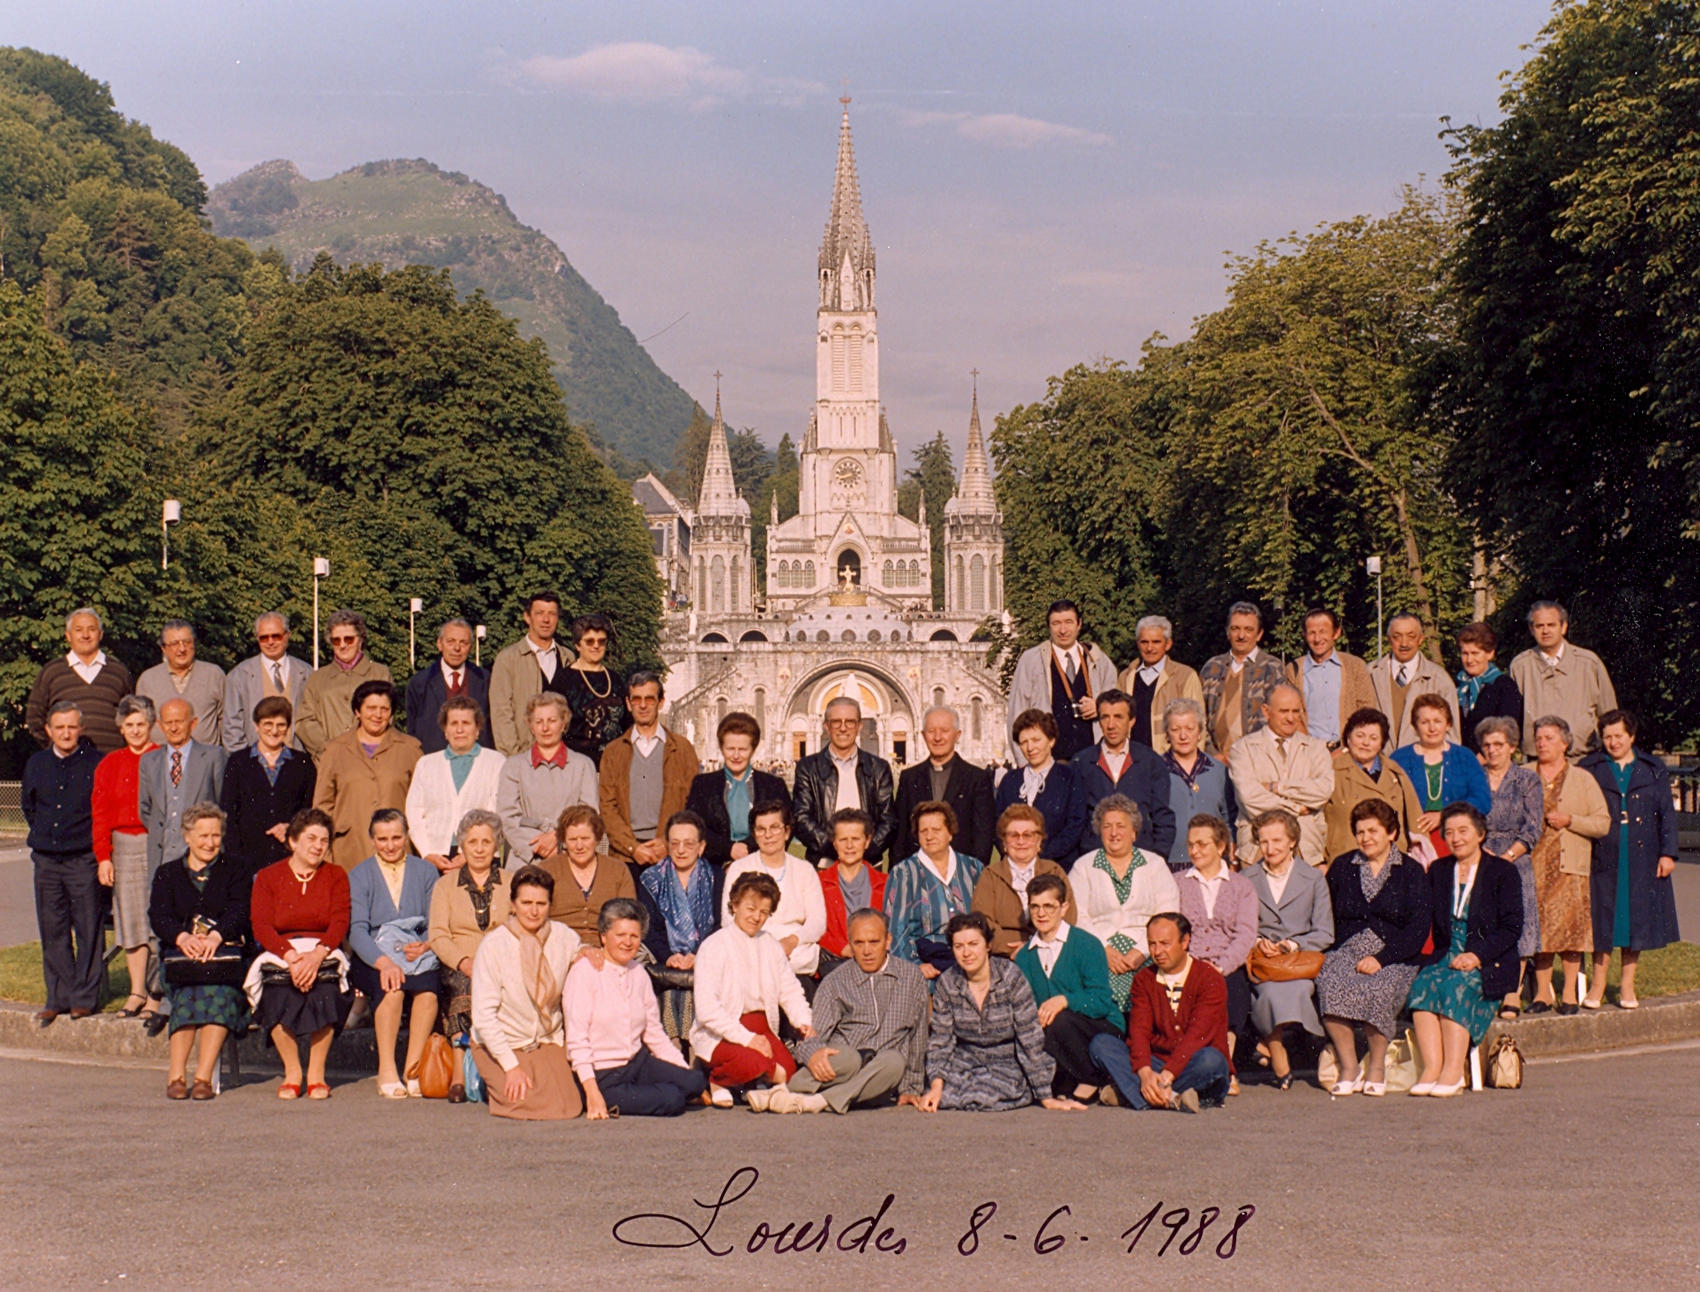 Lourdes 1988